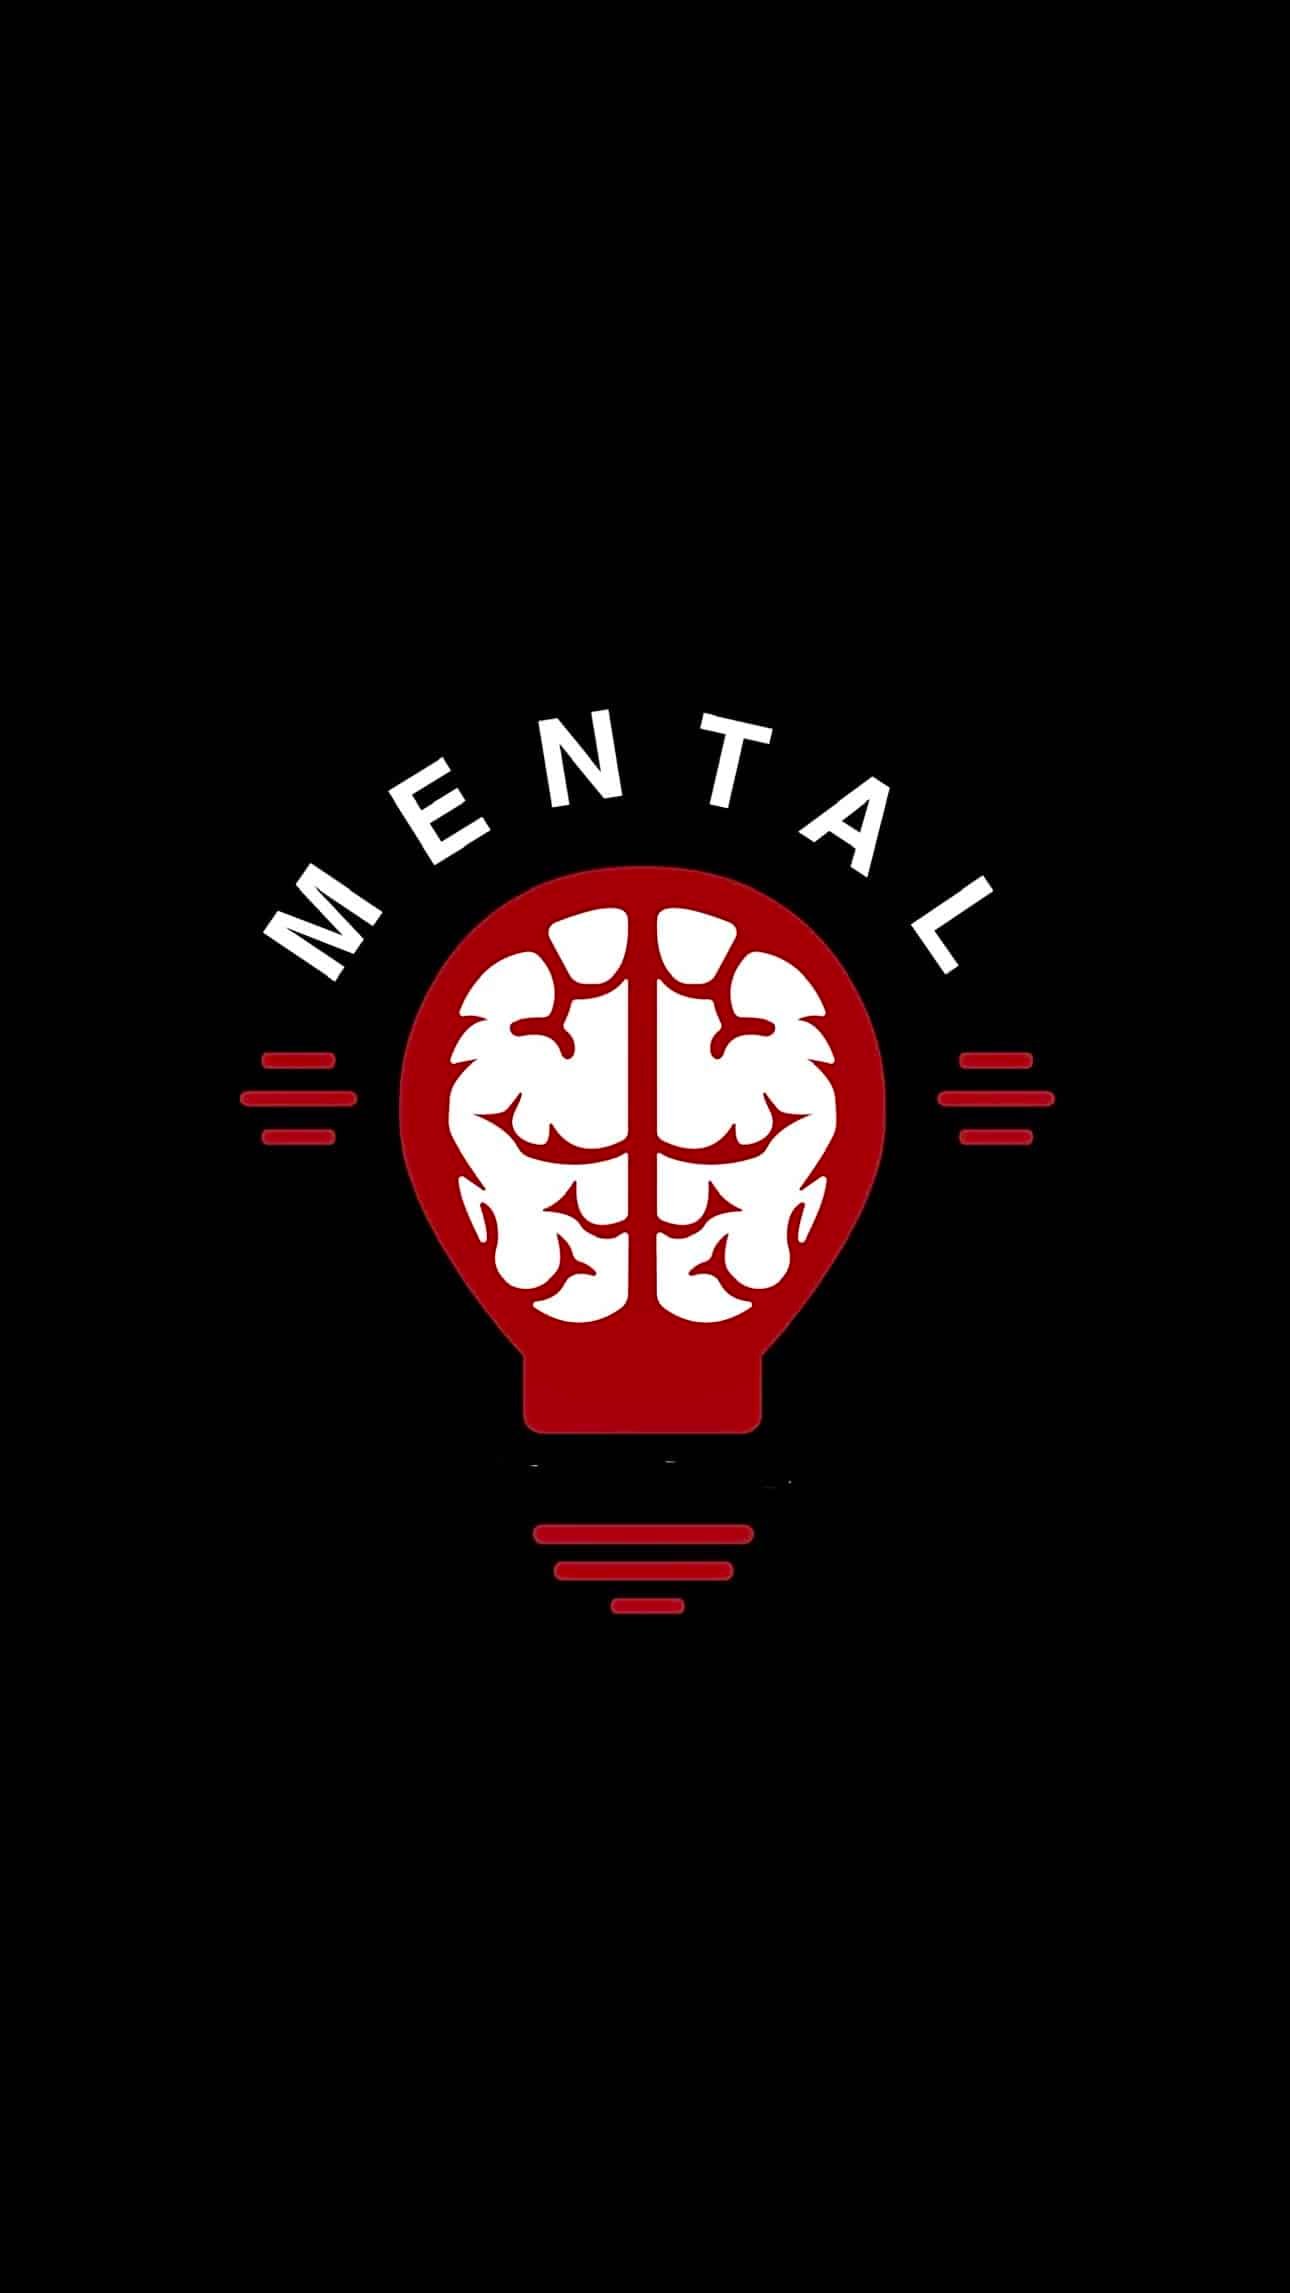 Mental-podcast-show-logo (1)